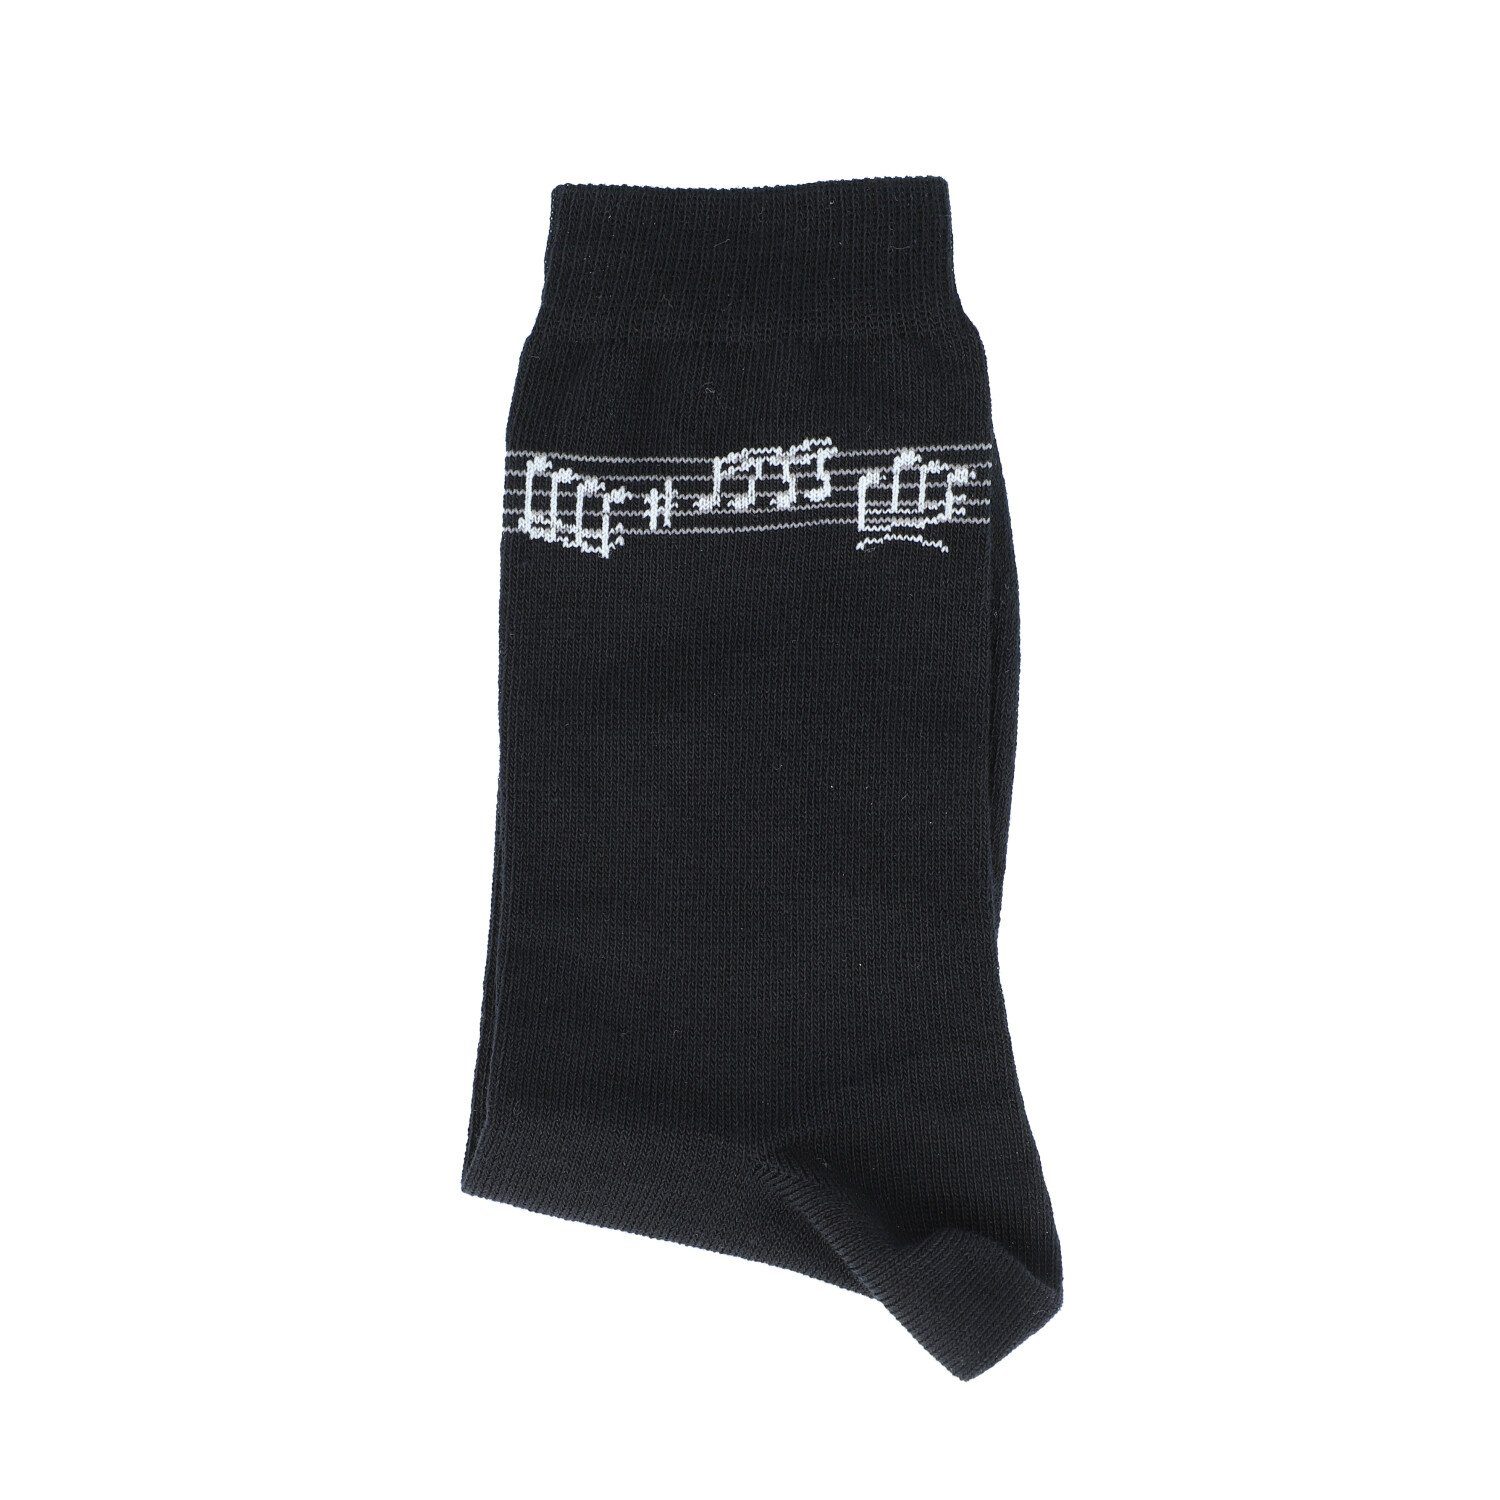 Musikboutique Freizeitsocken (1-Paar) schwarze Socken mit eingewebten Notenband Gr. 39/42